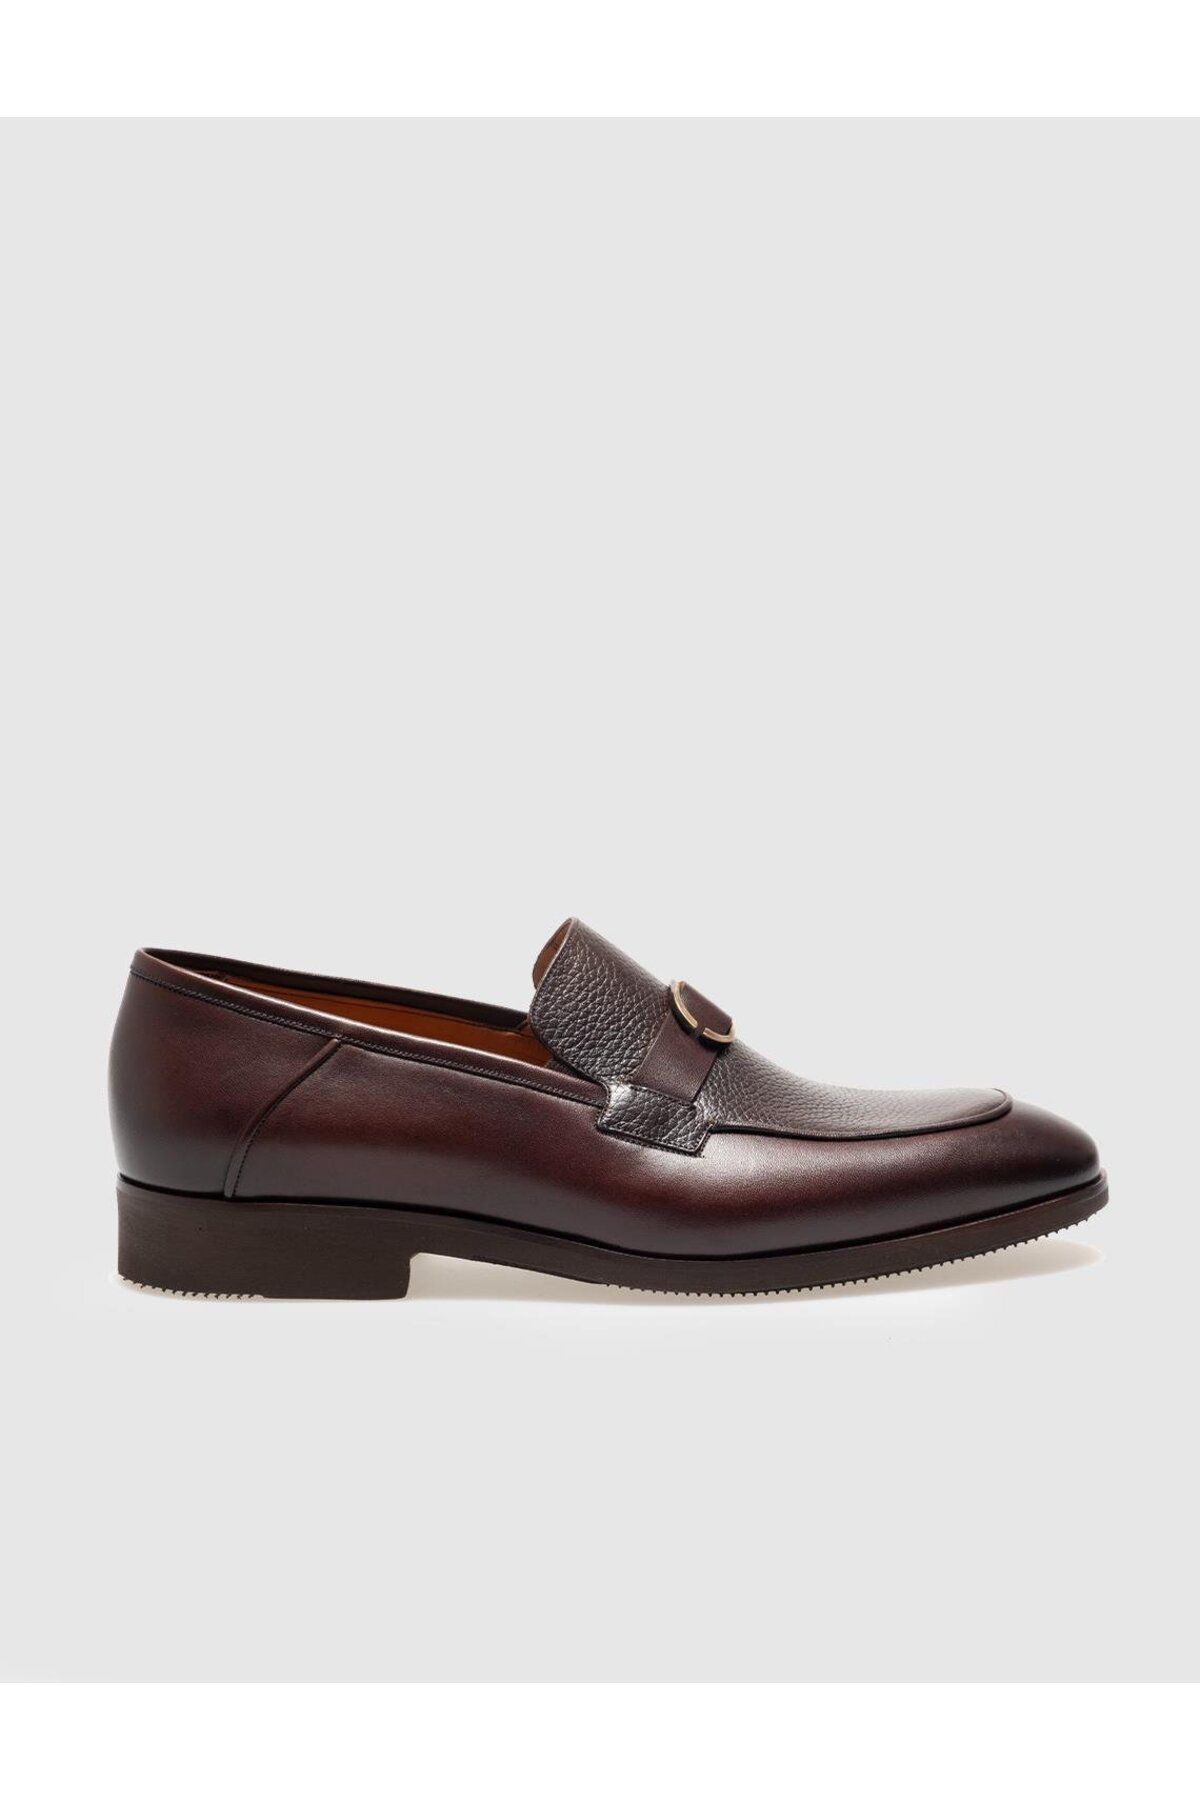 Cabani کفش های کلاسیک مردانه قهوه ای چرمی واقعی